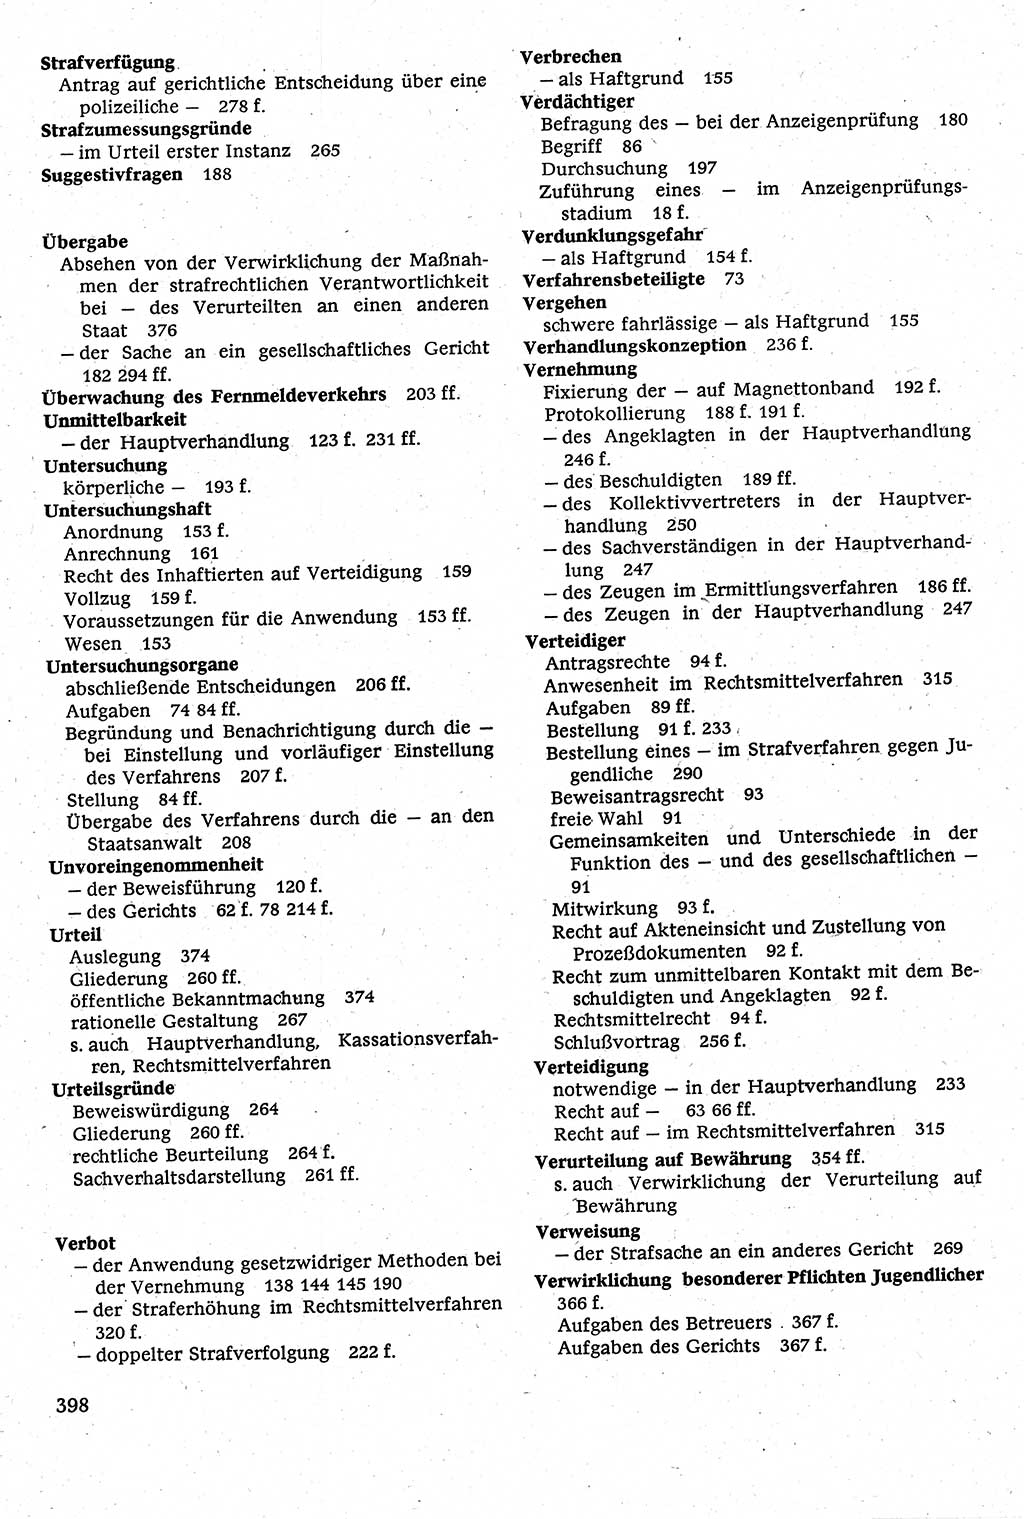 Strafverfahrensrecht [Deutsche Demokratische Republik (DDR)], Lehrbuch 1982, Seite 398 (Strafverf.-R. DDR Lb. 1982, S. 398)